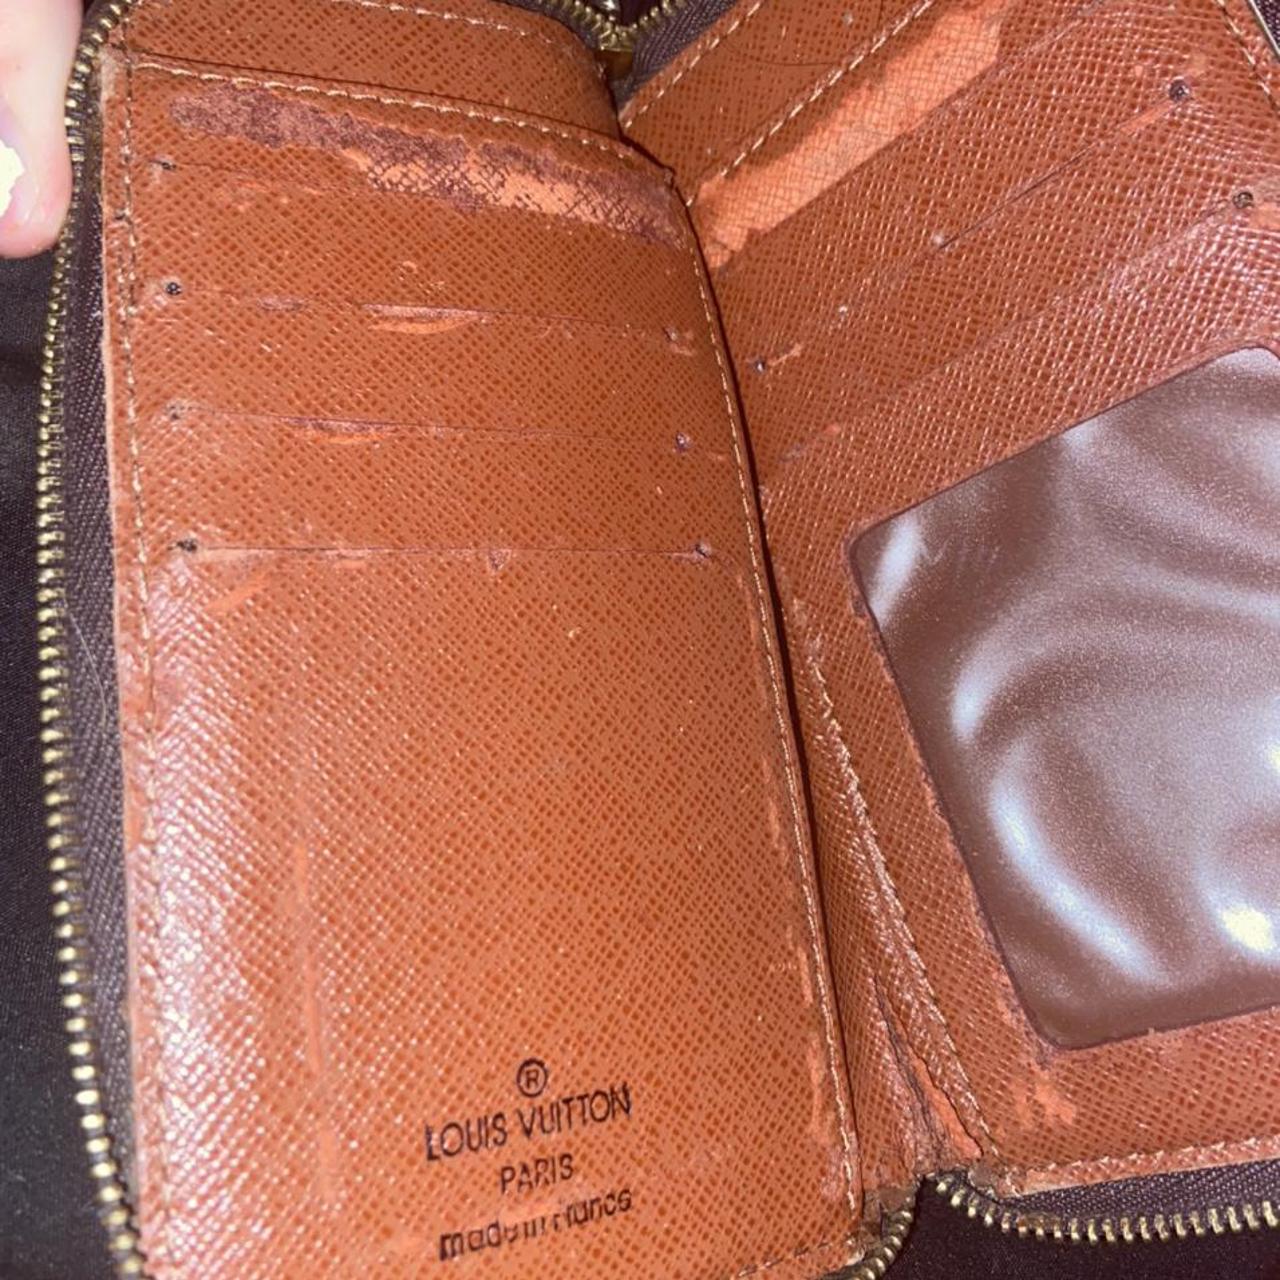 Vintage Louis Vuitton wallet. Front flap has curling - Depop